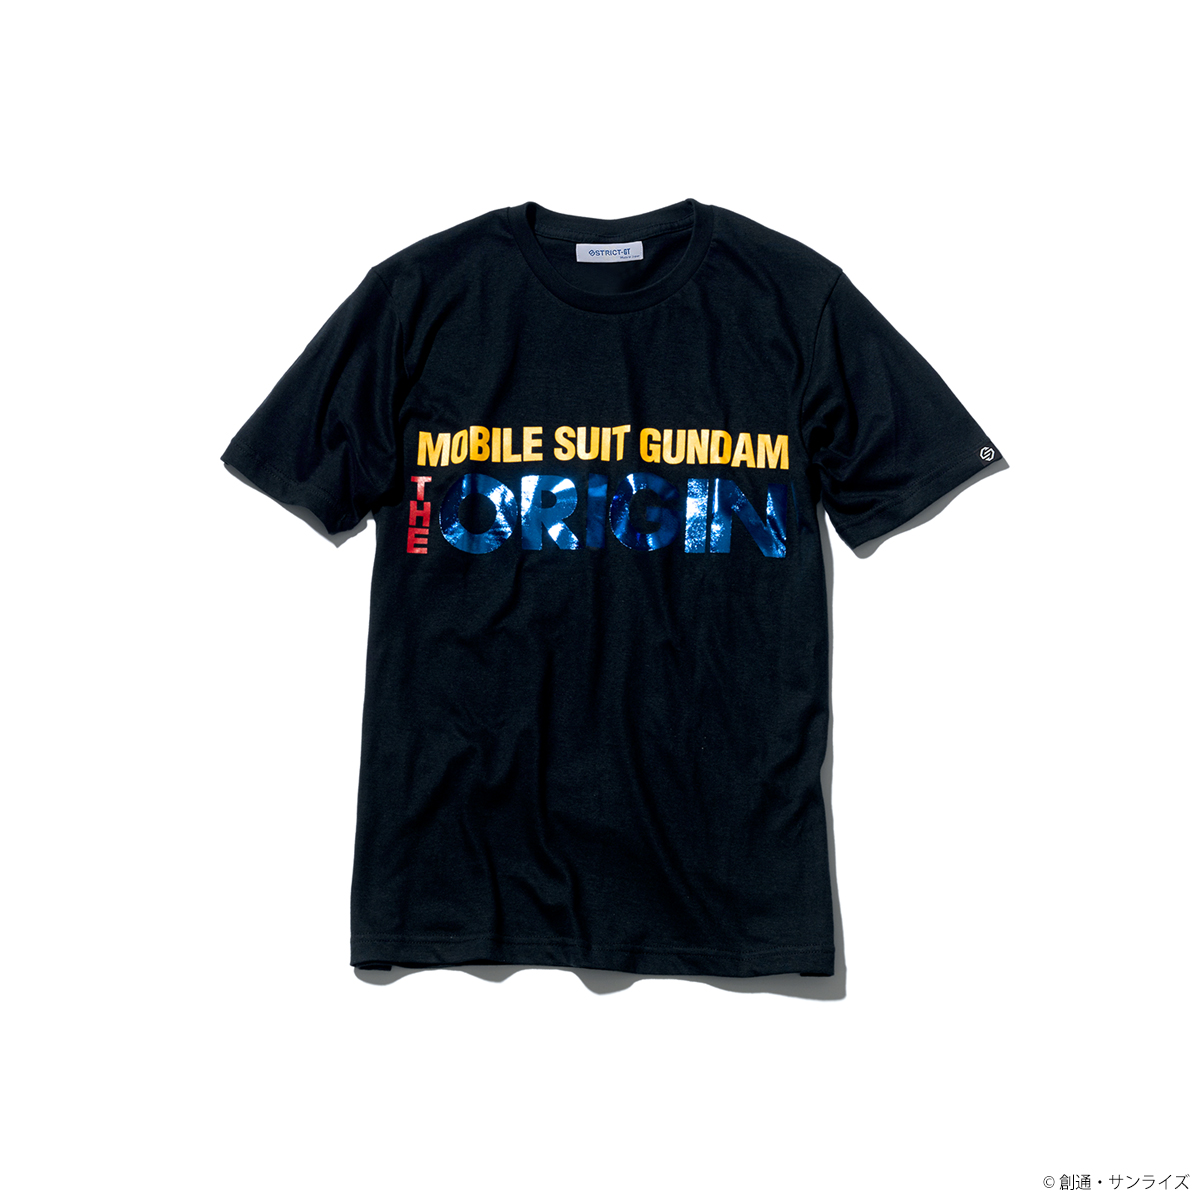 『機動戦士ガンダム THE ORIGIN』タイトルロゴ柄 Tシャツ